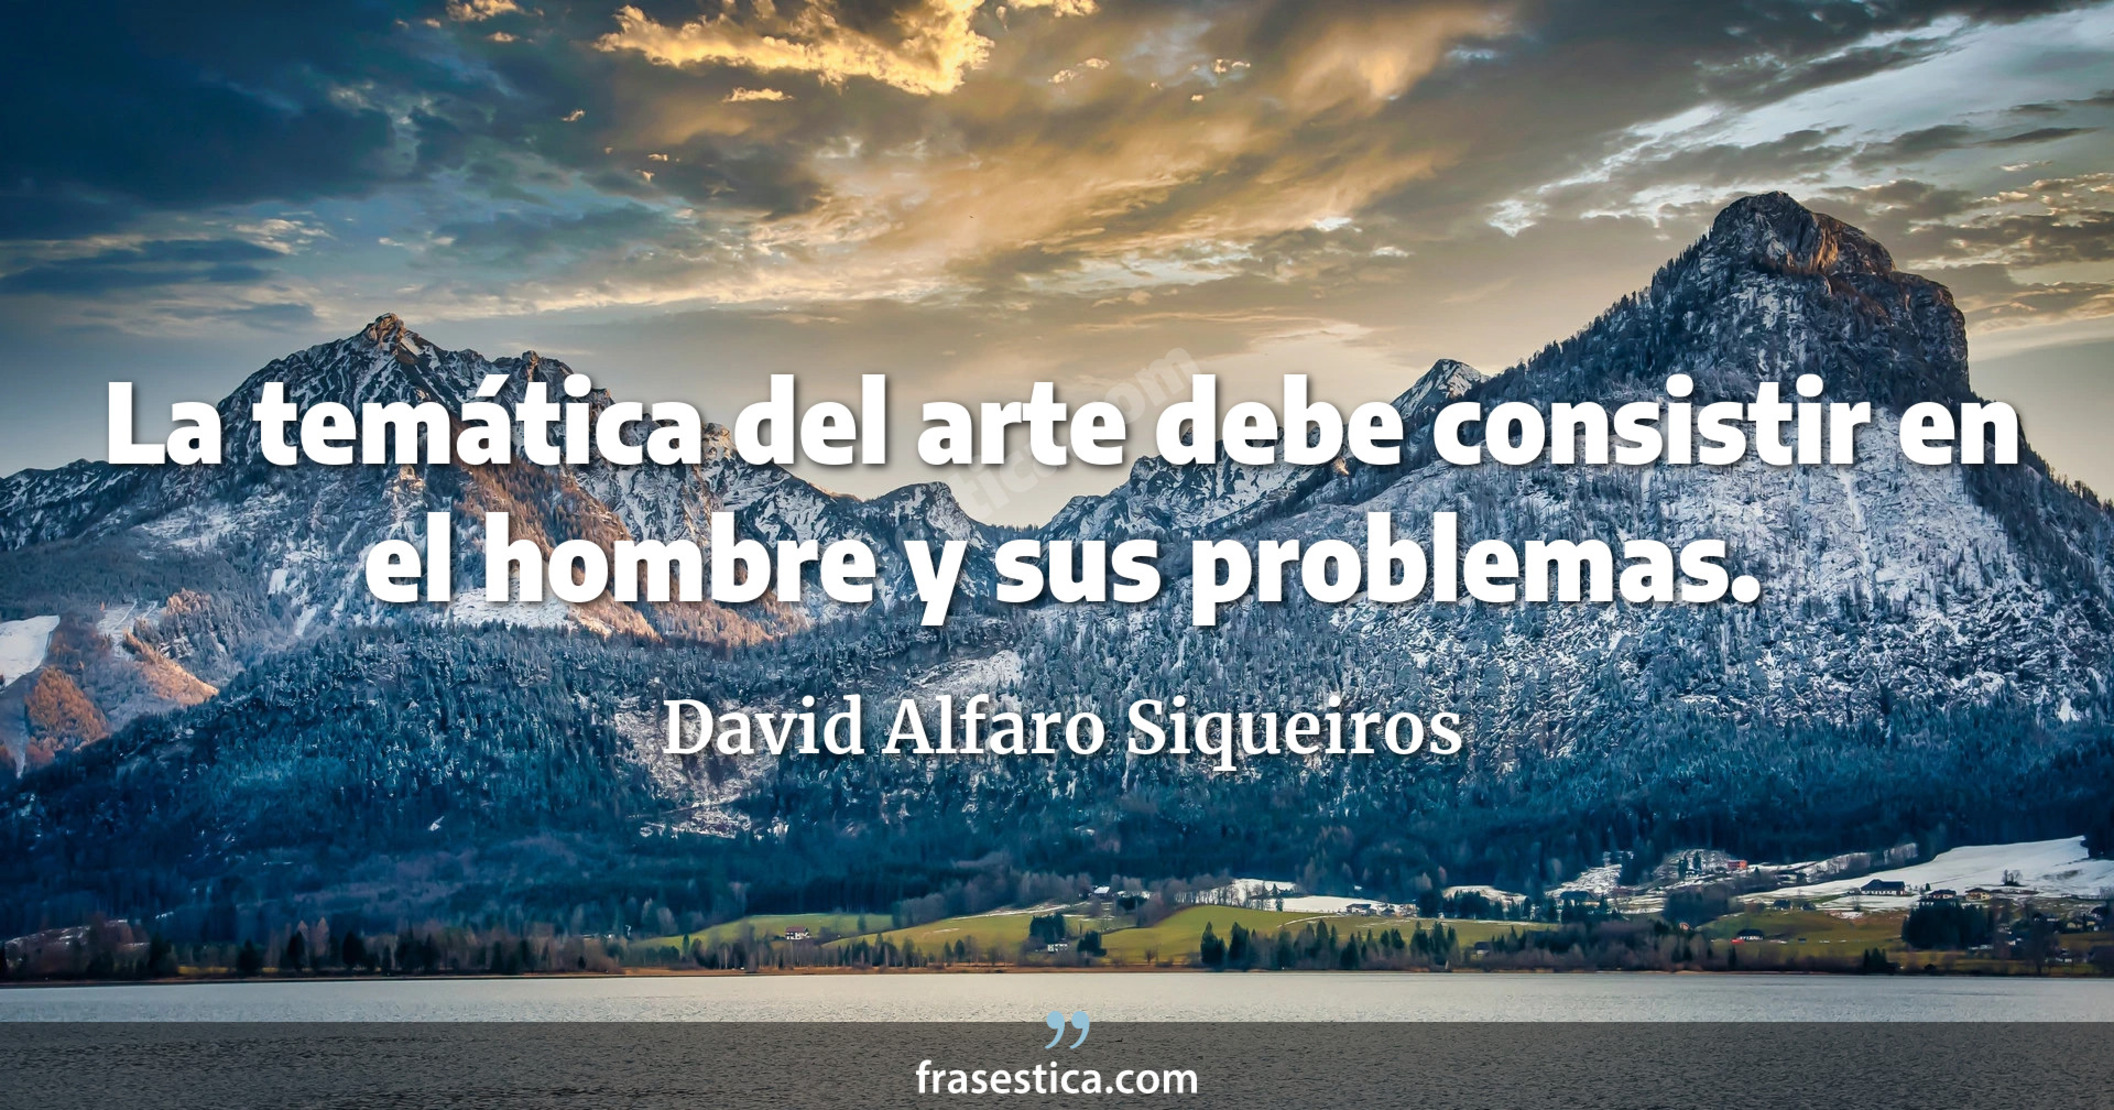 La temática del arte debe consistir en el hombre y sus problemas. - David Alfaro Siqueiros